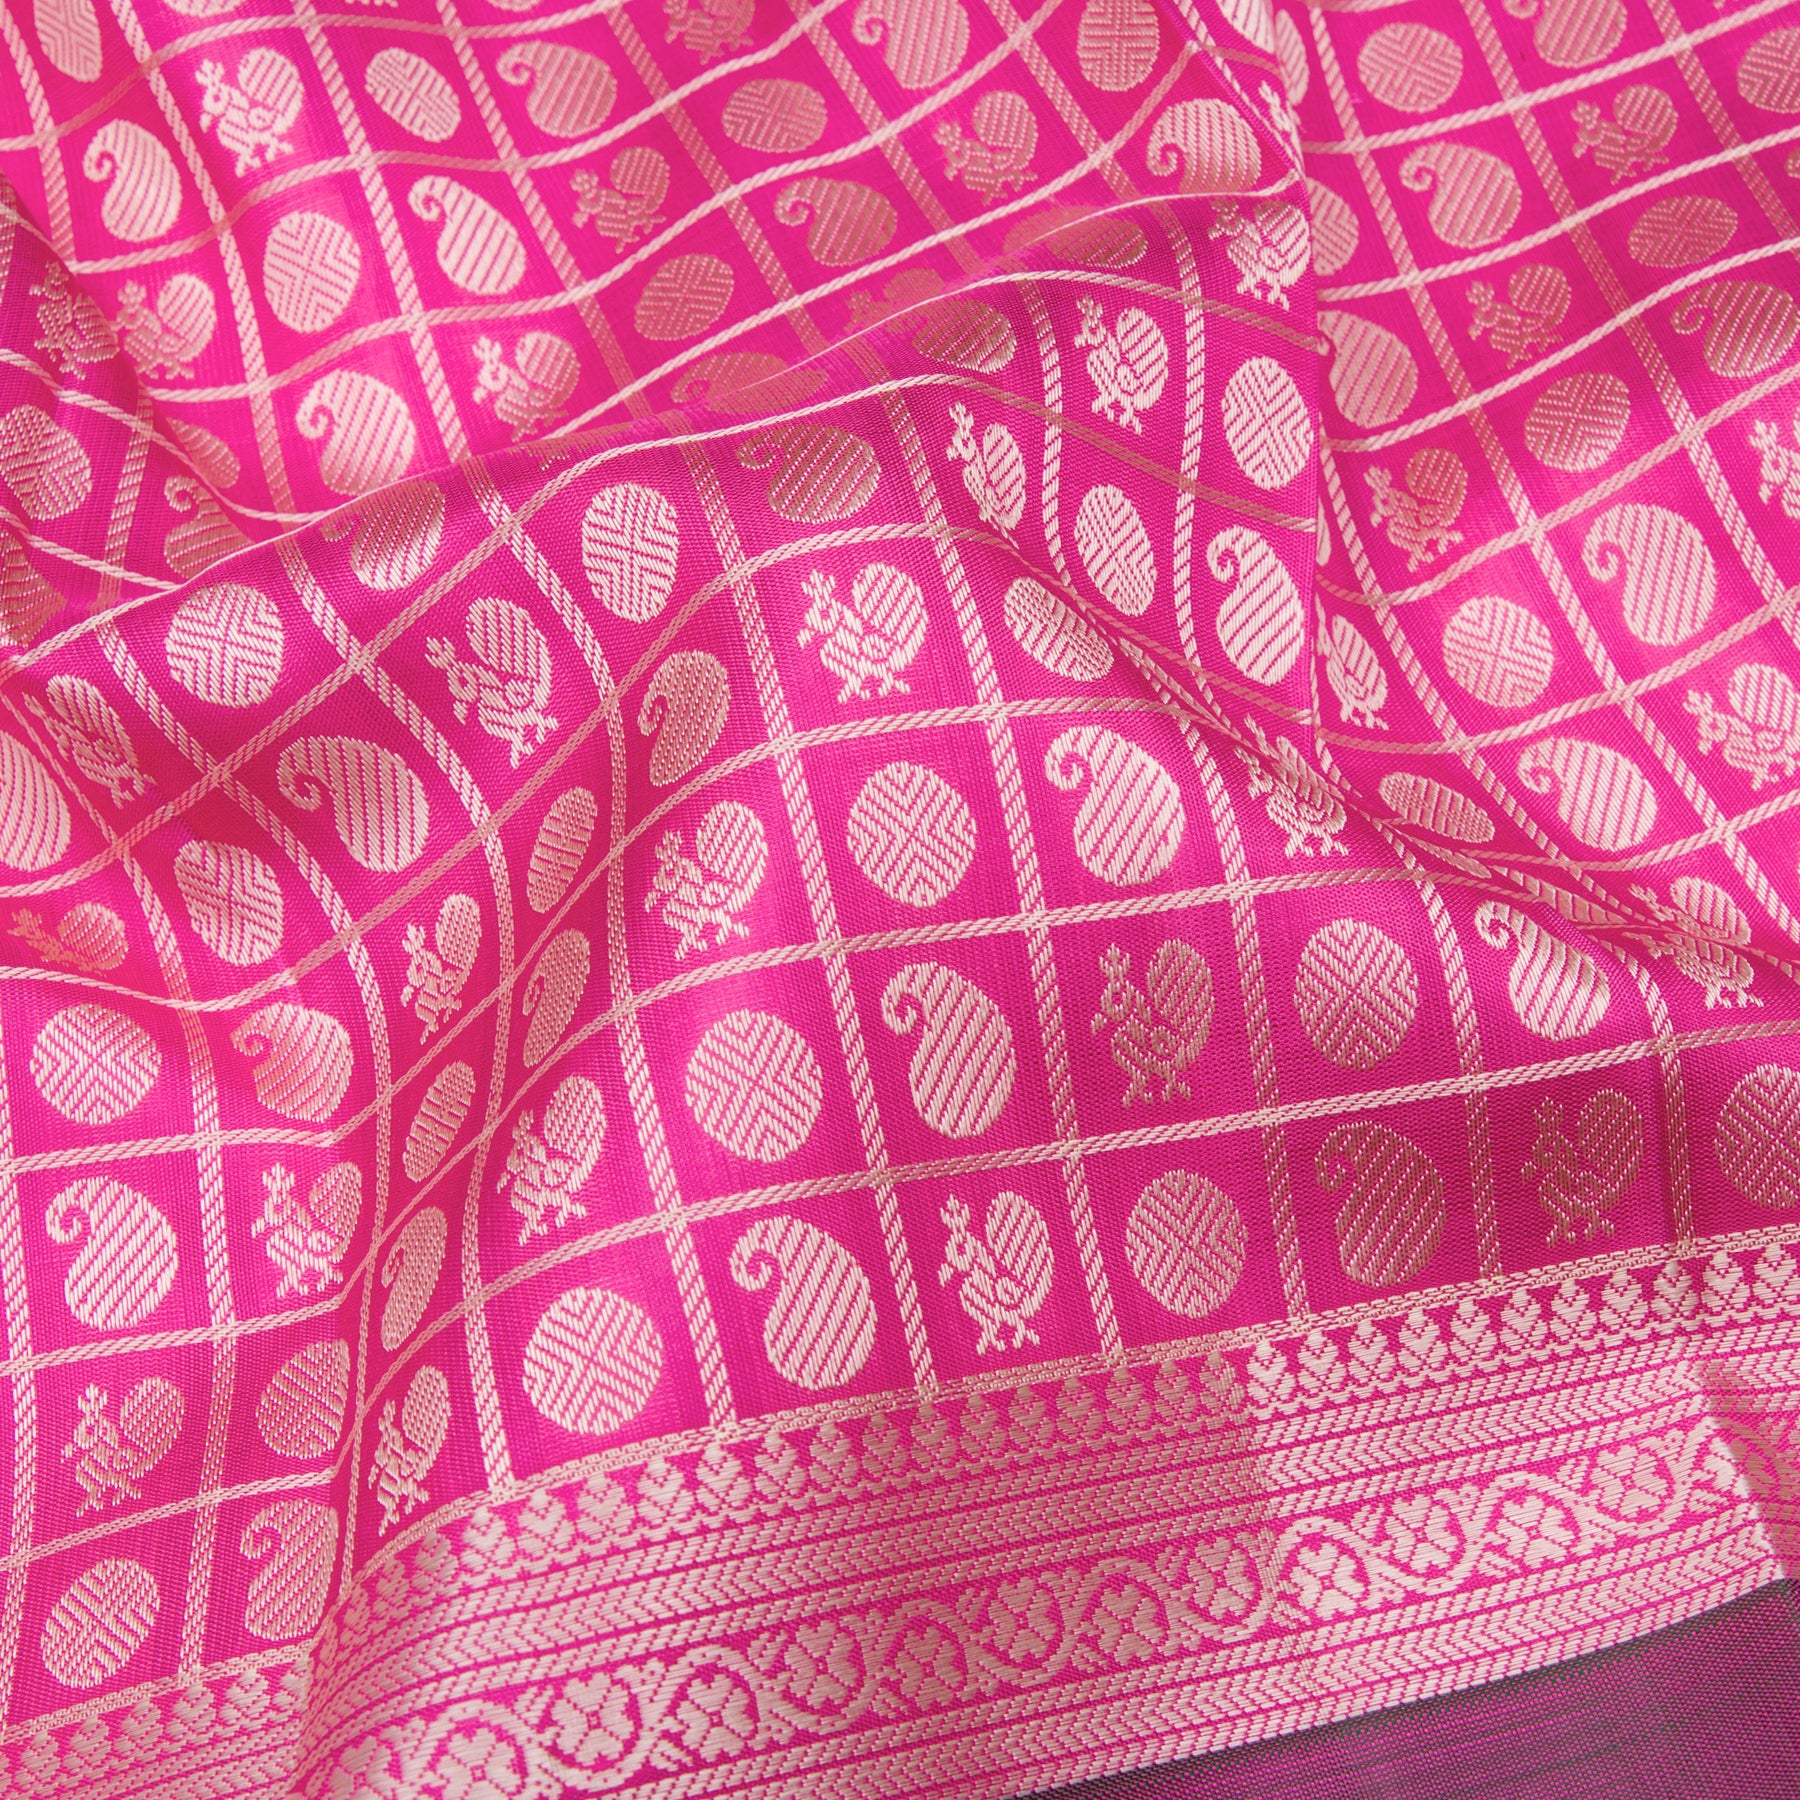 Kanakavalli Kanjivaram Silk Sari 23-599-HS001-04095 - Fabric View